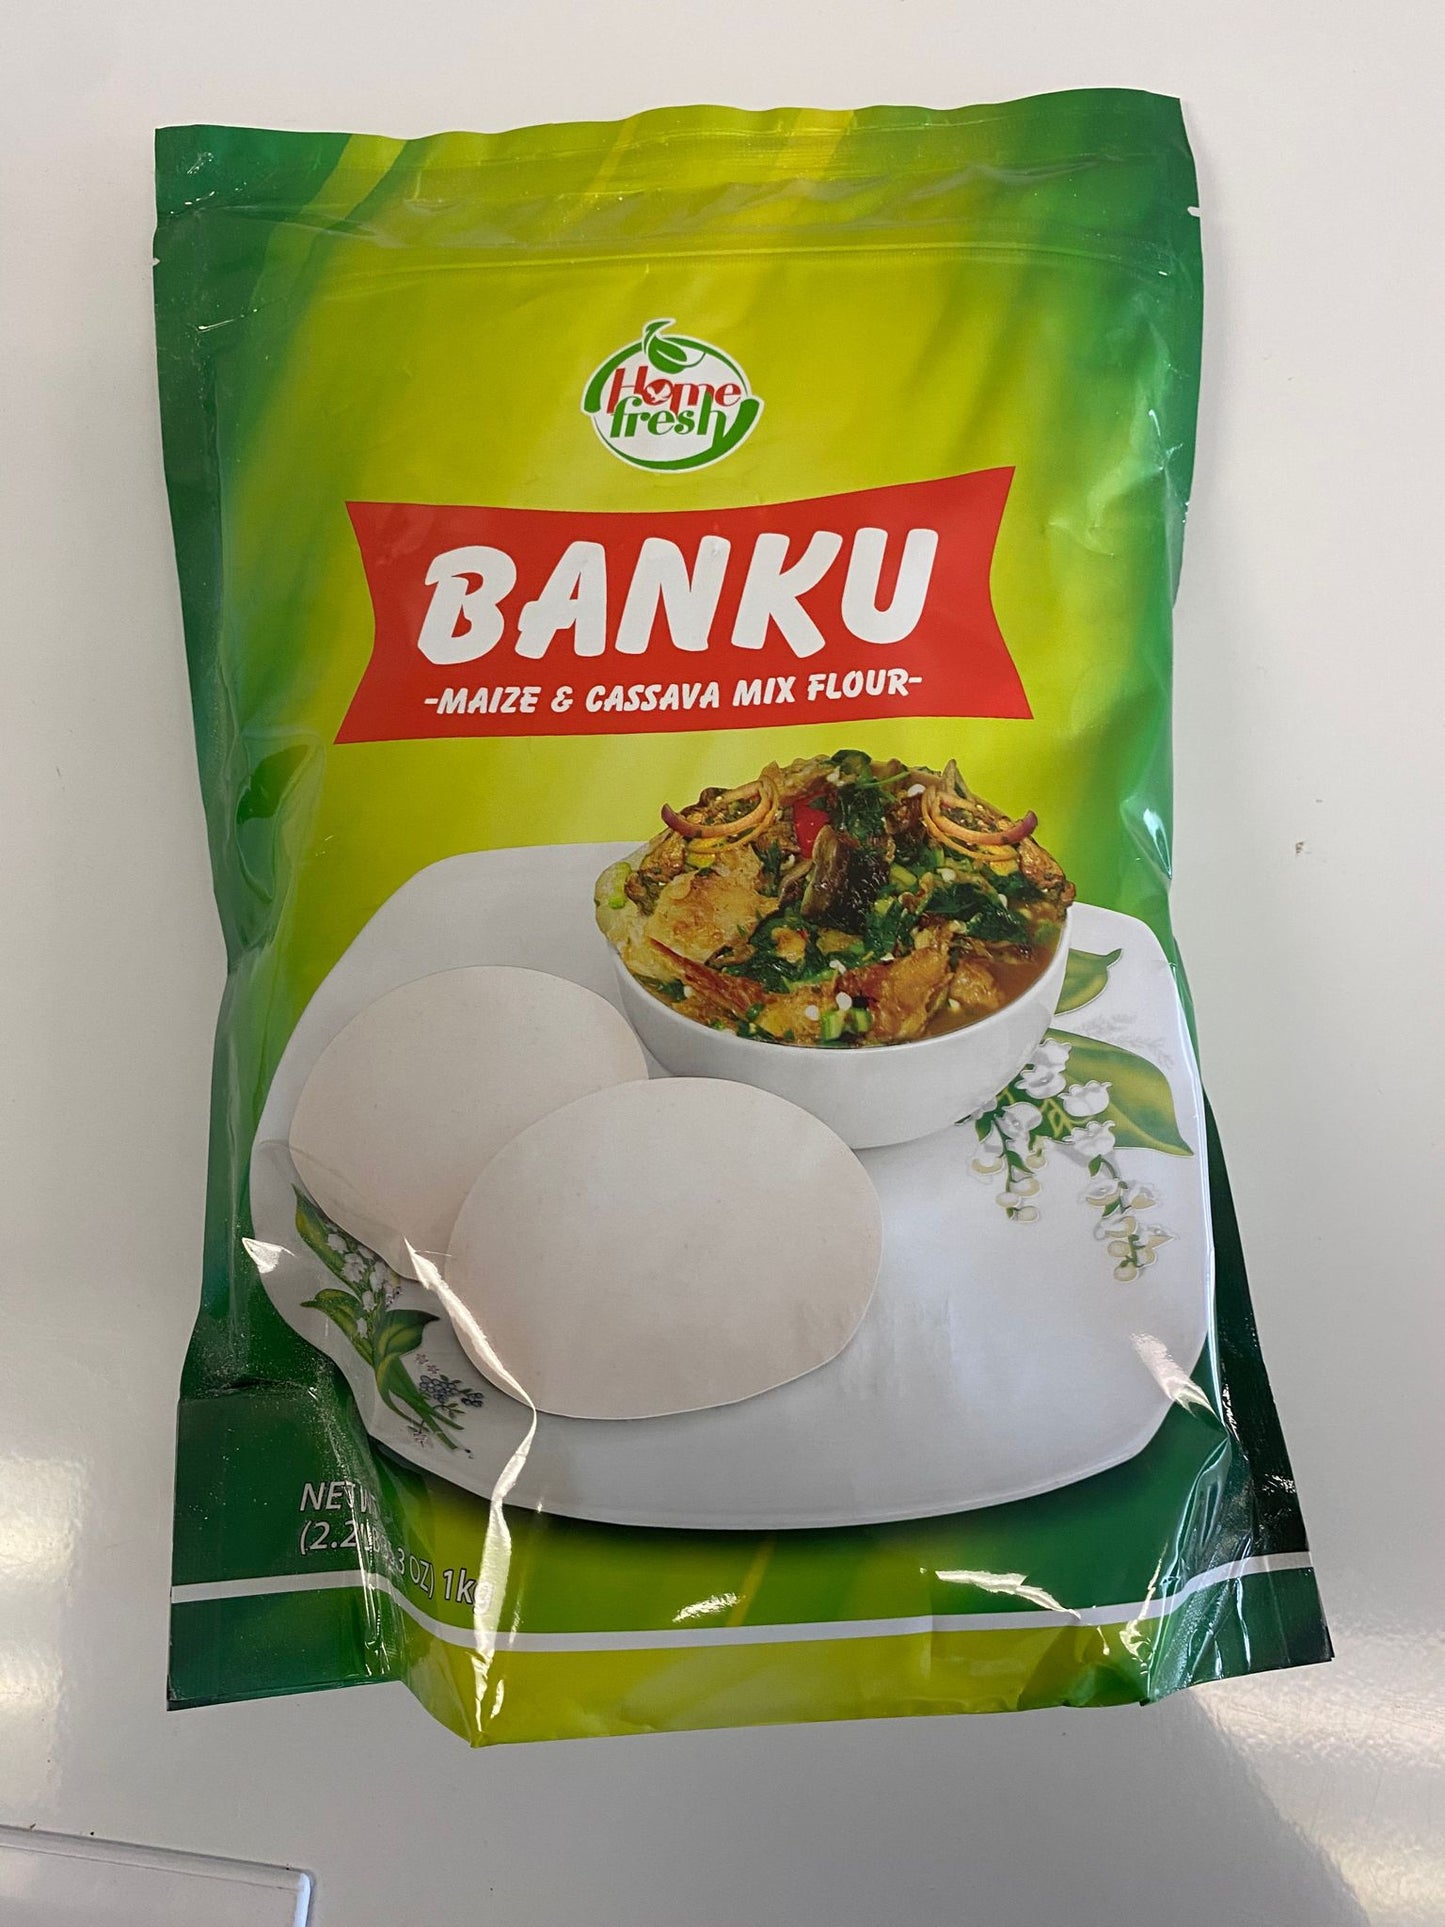 Banku Maize & Cassava Flour mix 2.2lb